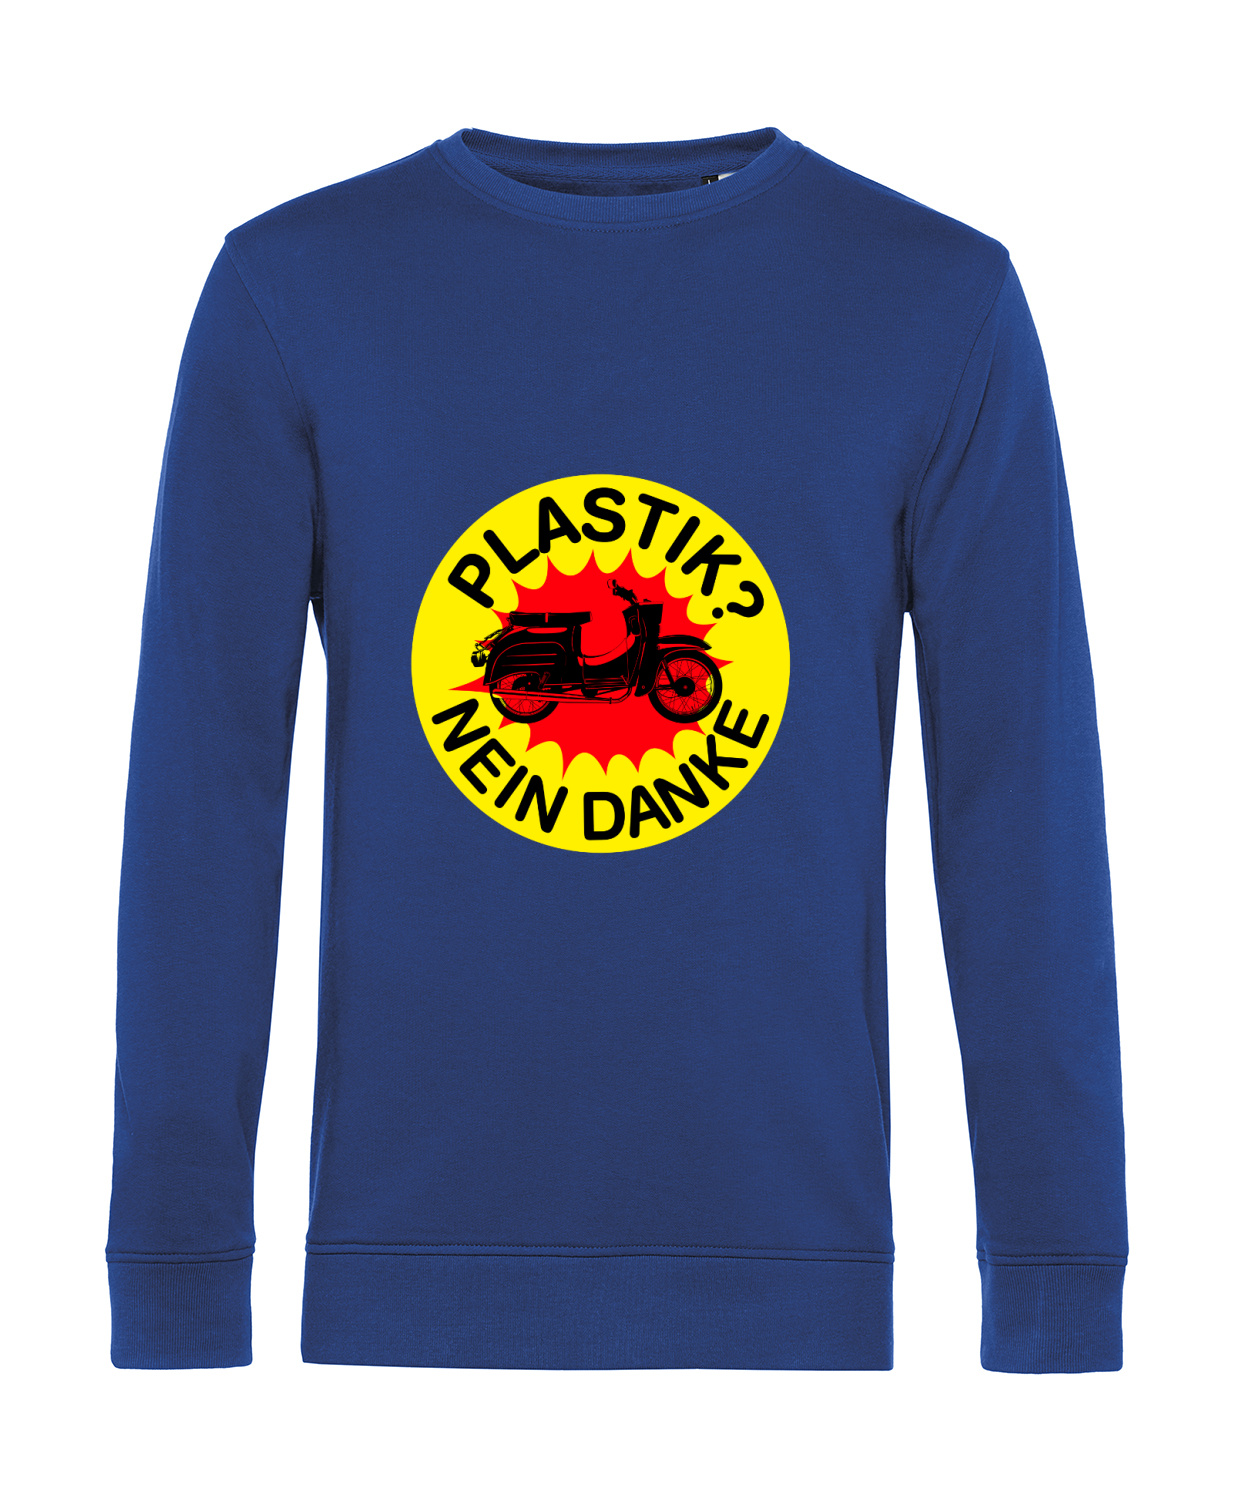 Nachhaltiges Sweatshirt Herren 2Takter - Plastik Nein Danke Schwalbe